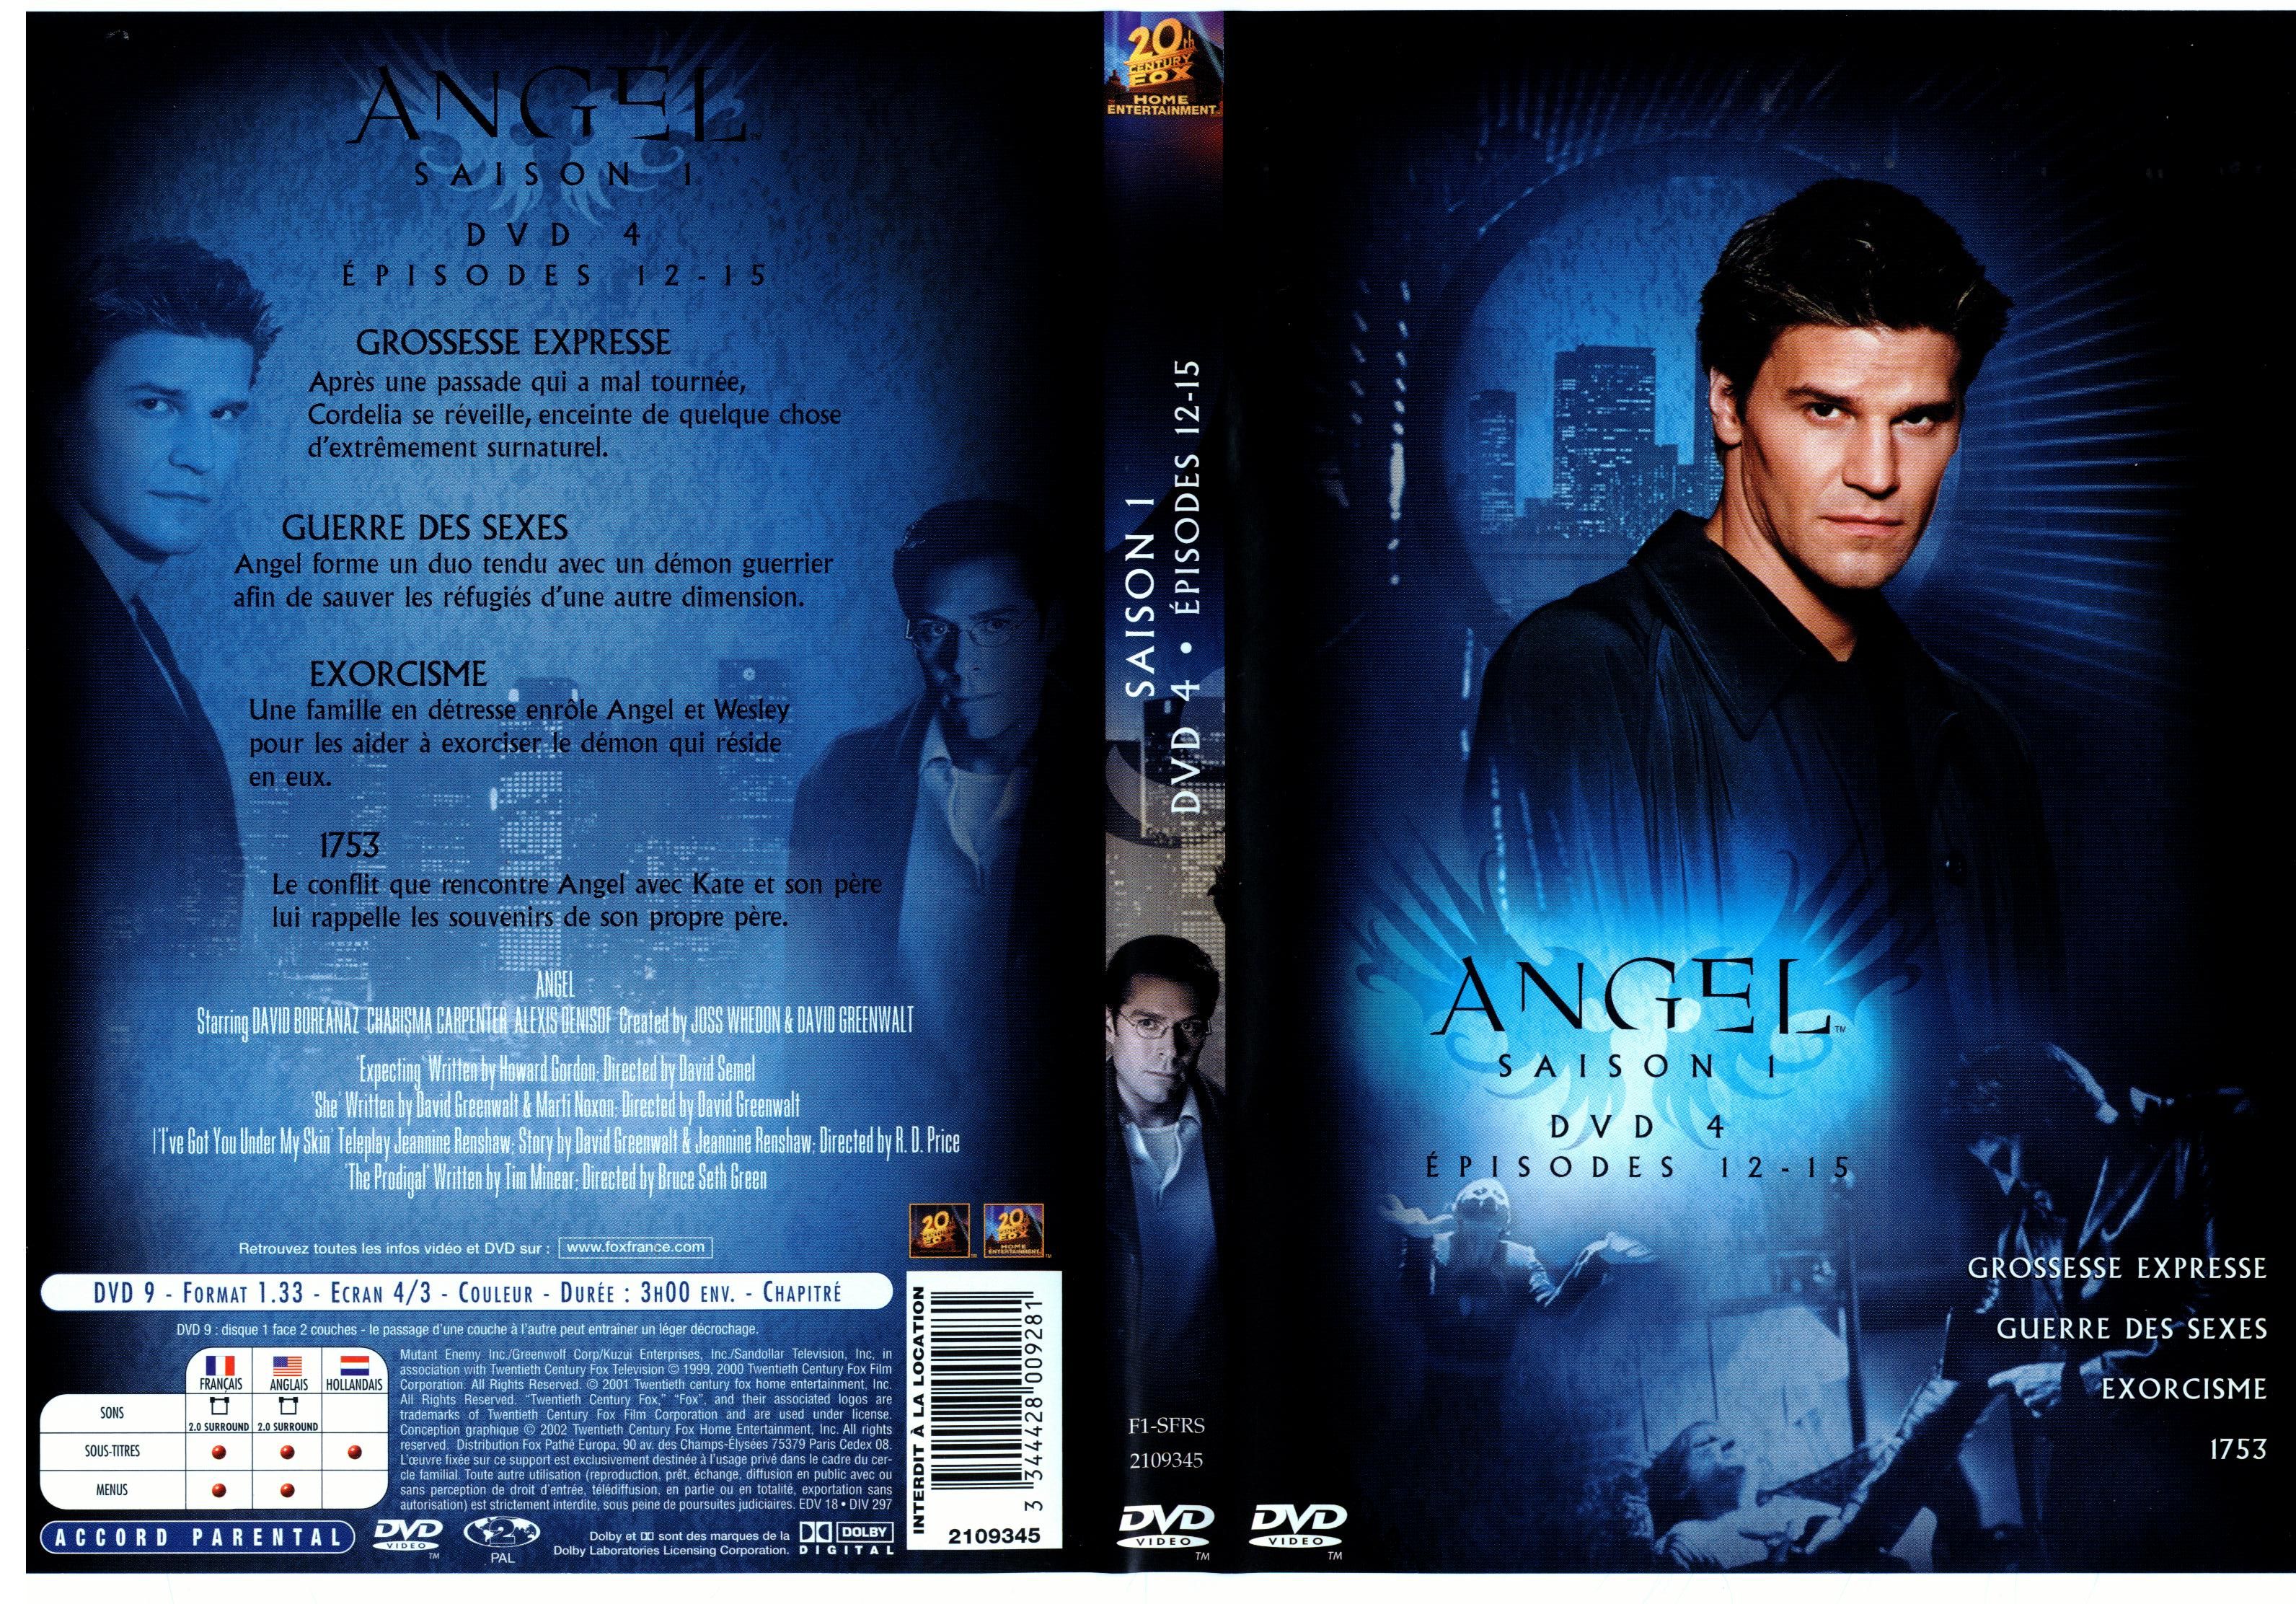 Jaquette DVD Angel Saison 1 dvd 4